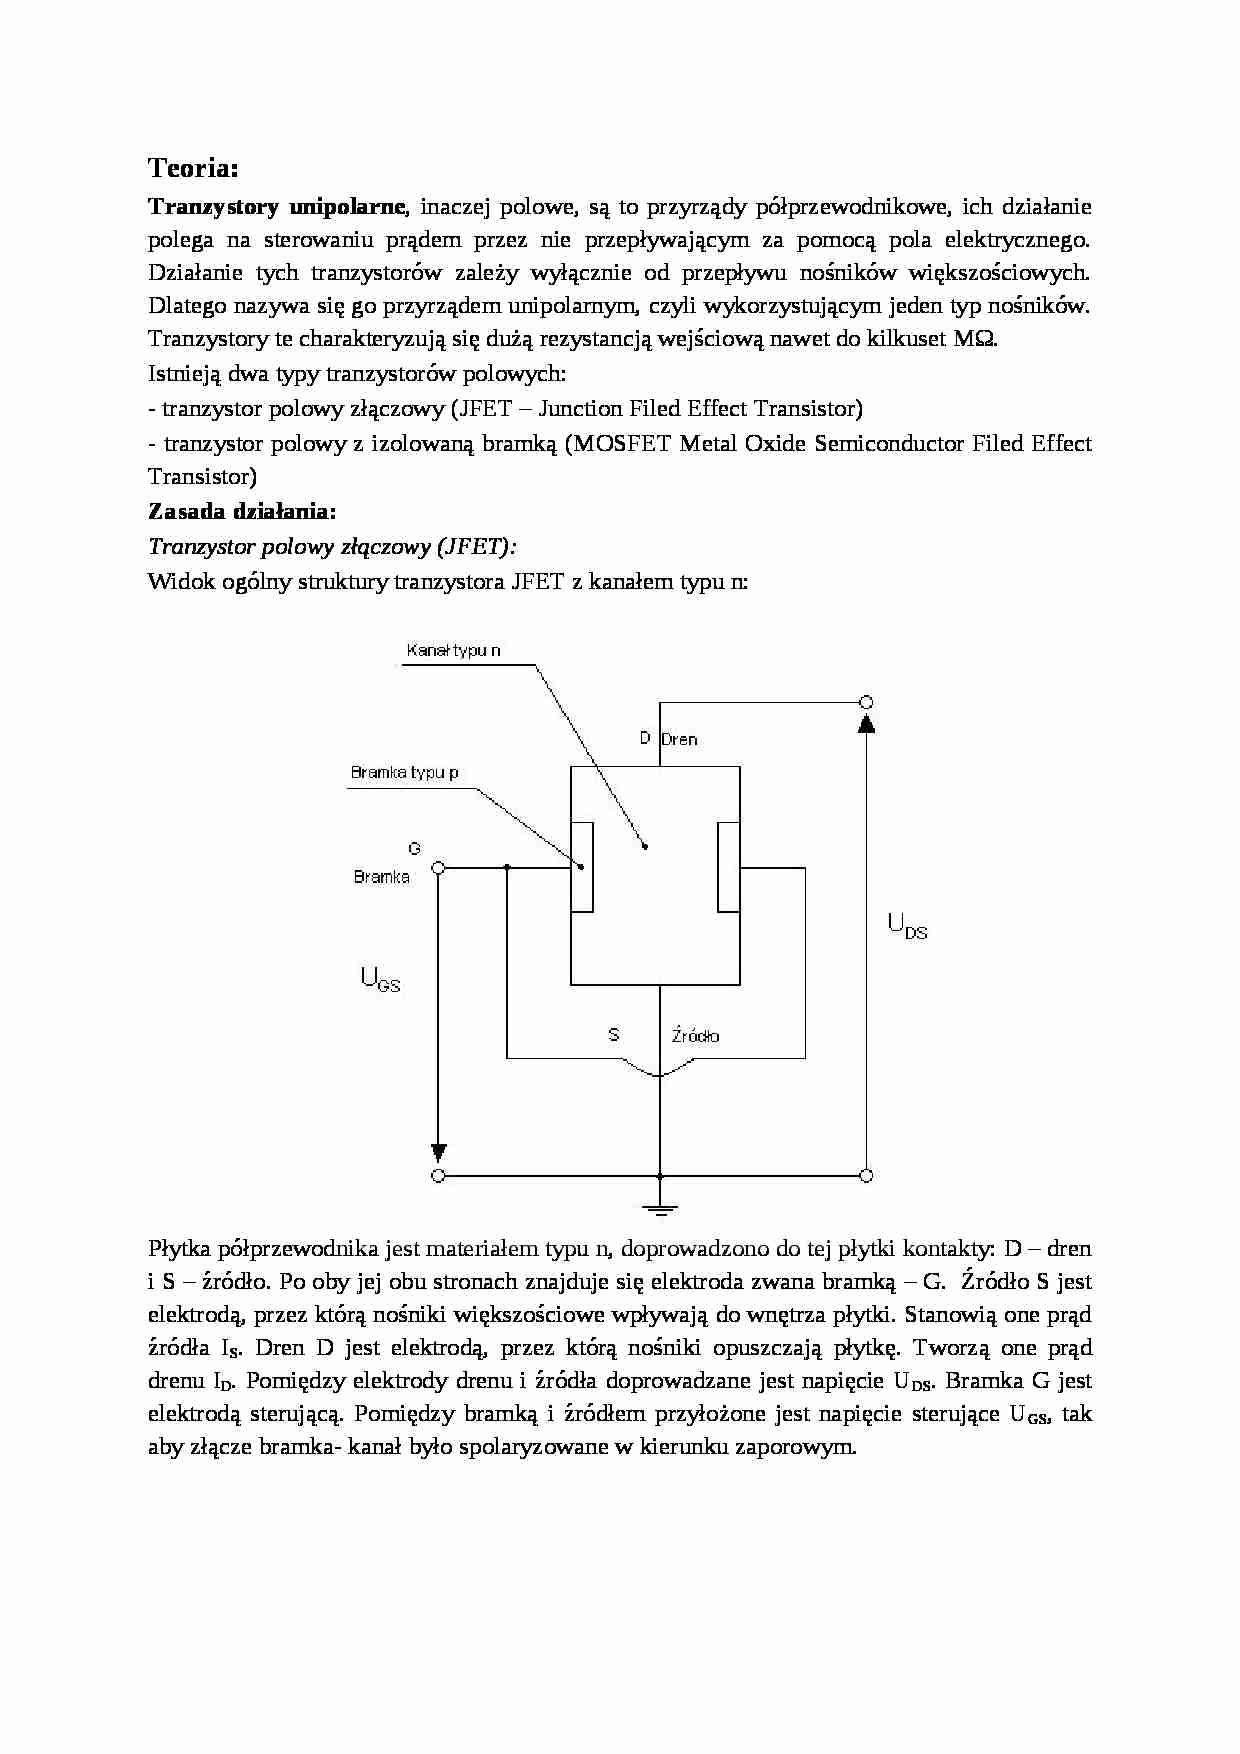 Tranzystory - zagadnienia teoretyczne - strona 1